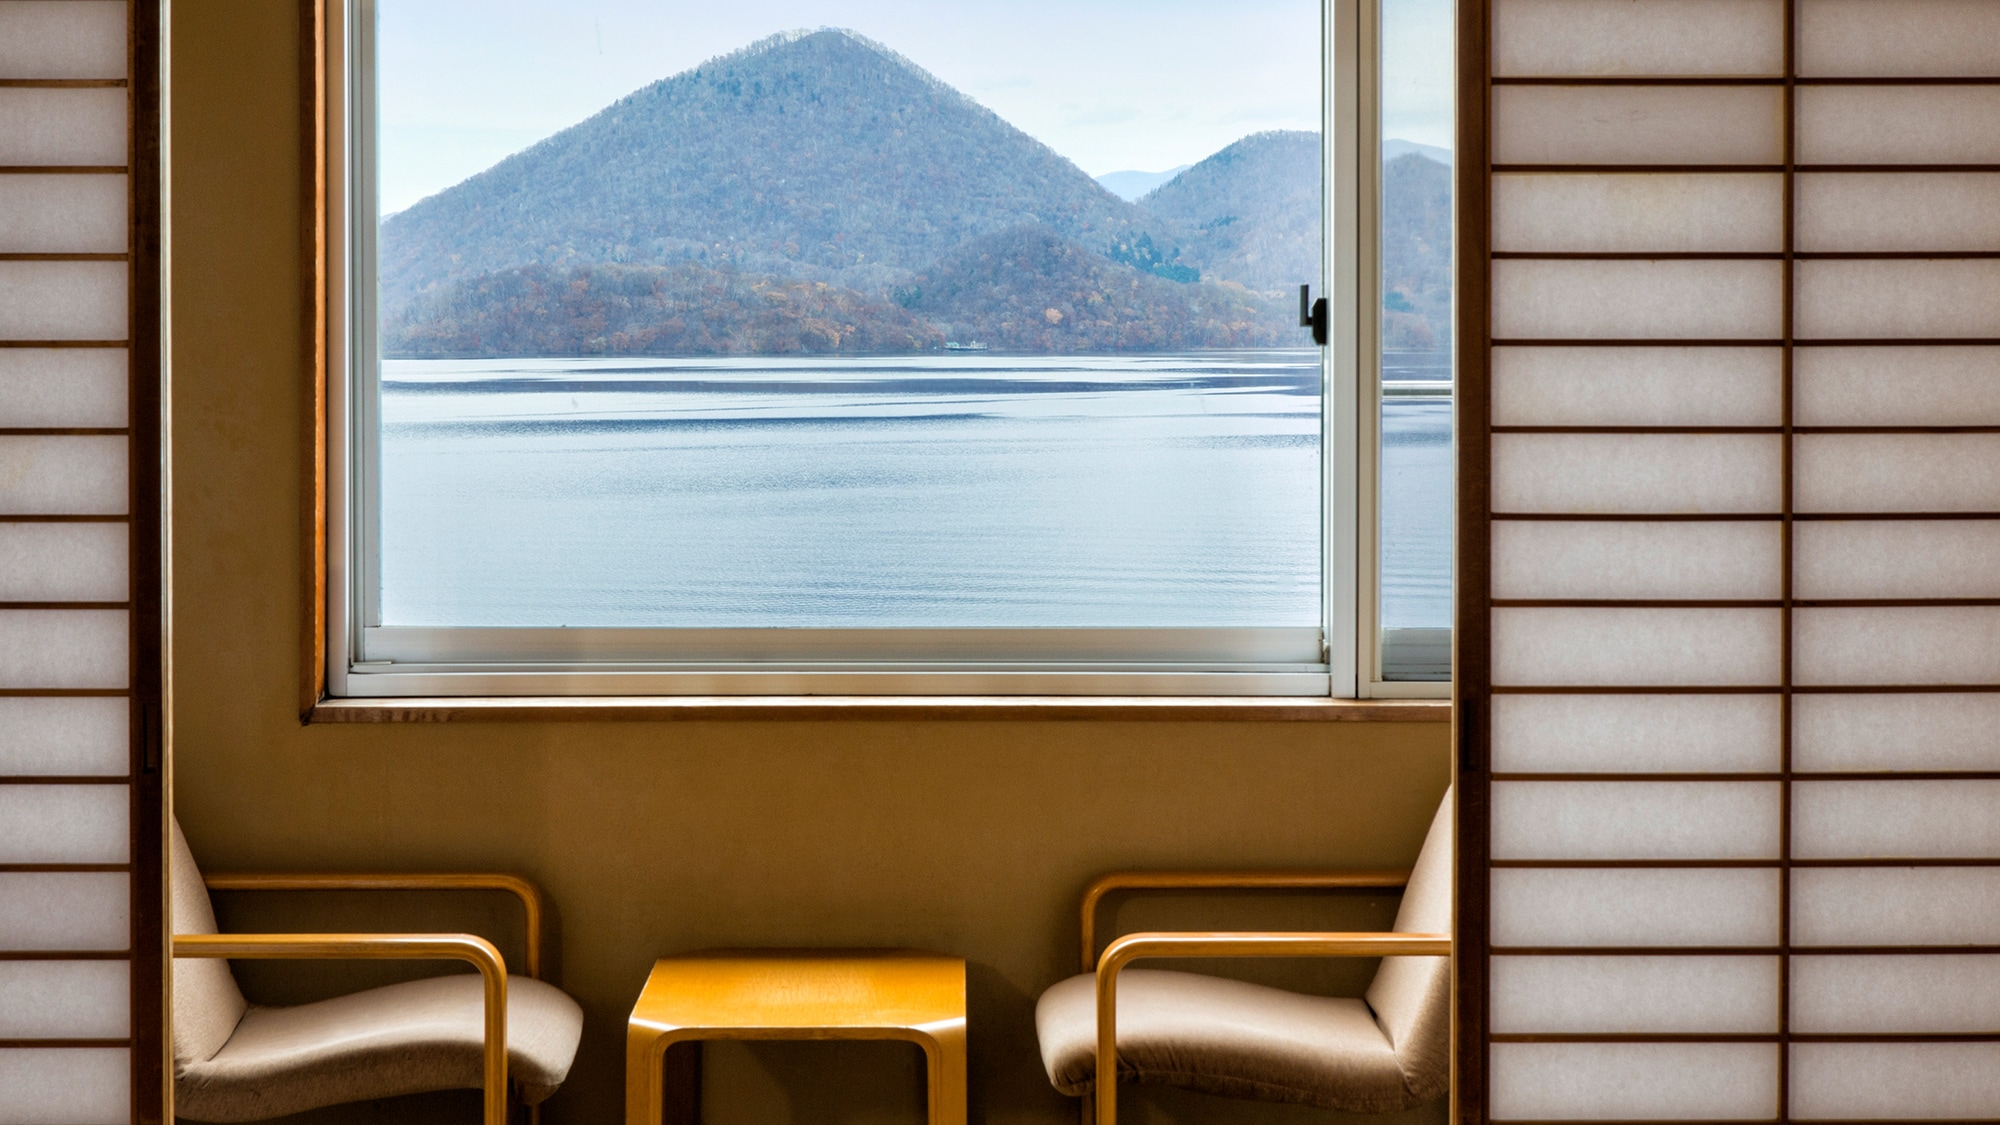 ห้องสไตล์ญี่ปุ่นริมทะเลสาบ